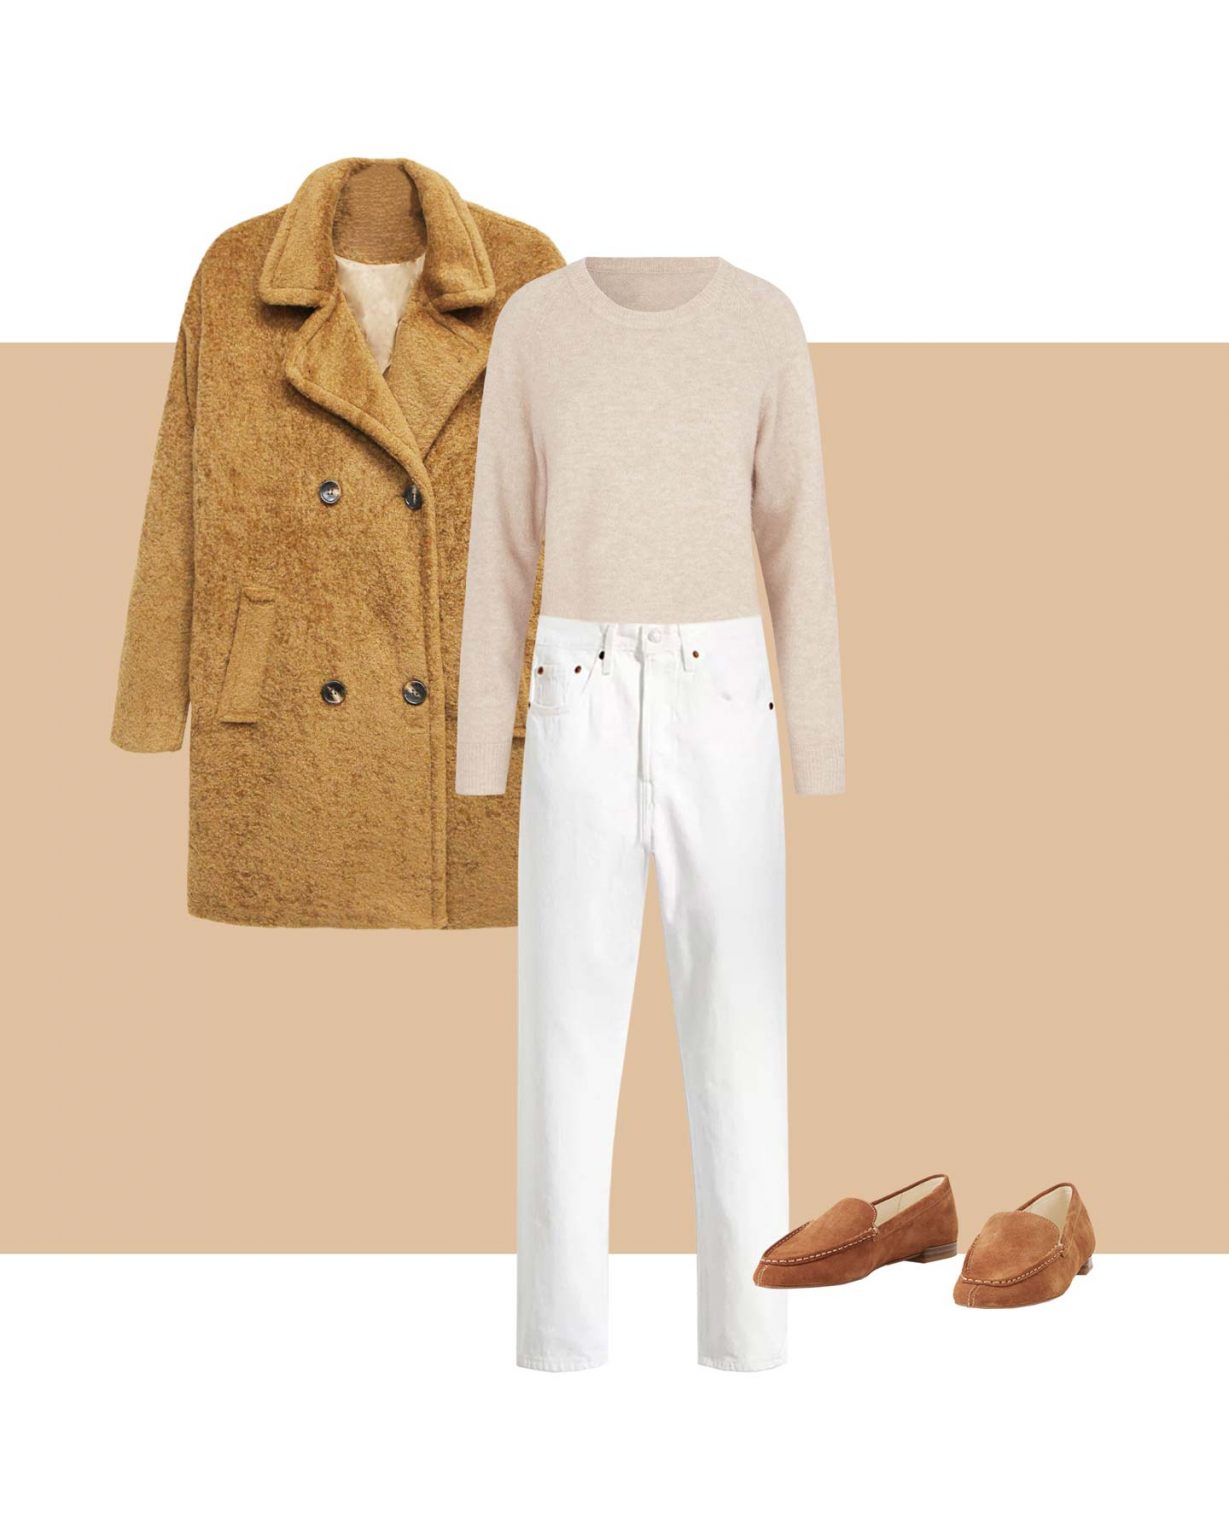 Keys to wear beige stylishly and effortlessly - Lookiero Blog